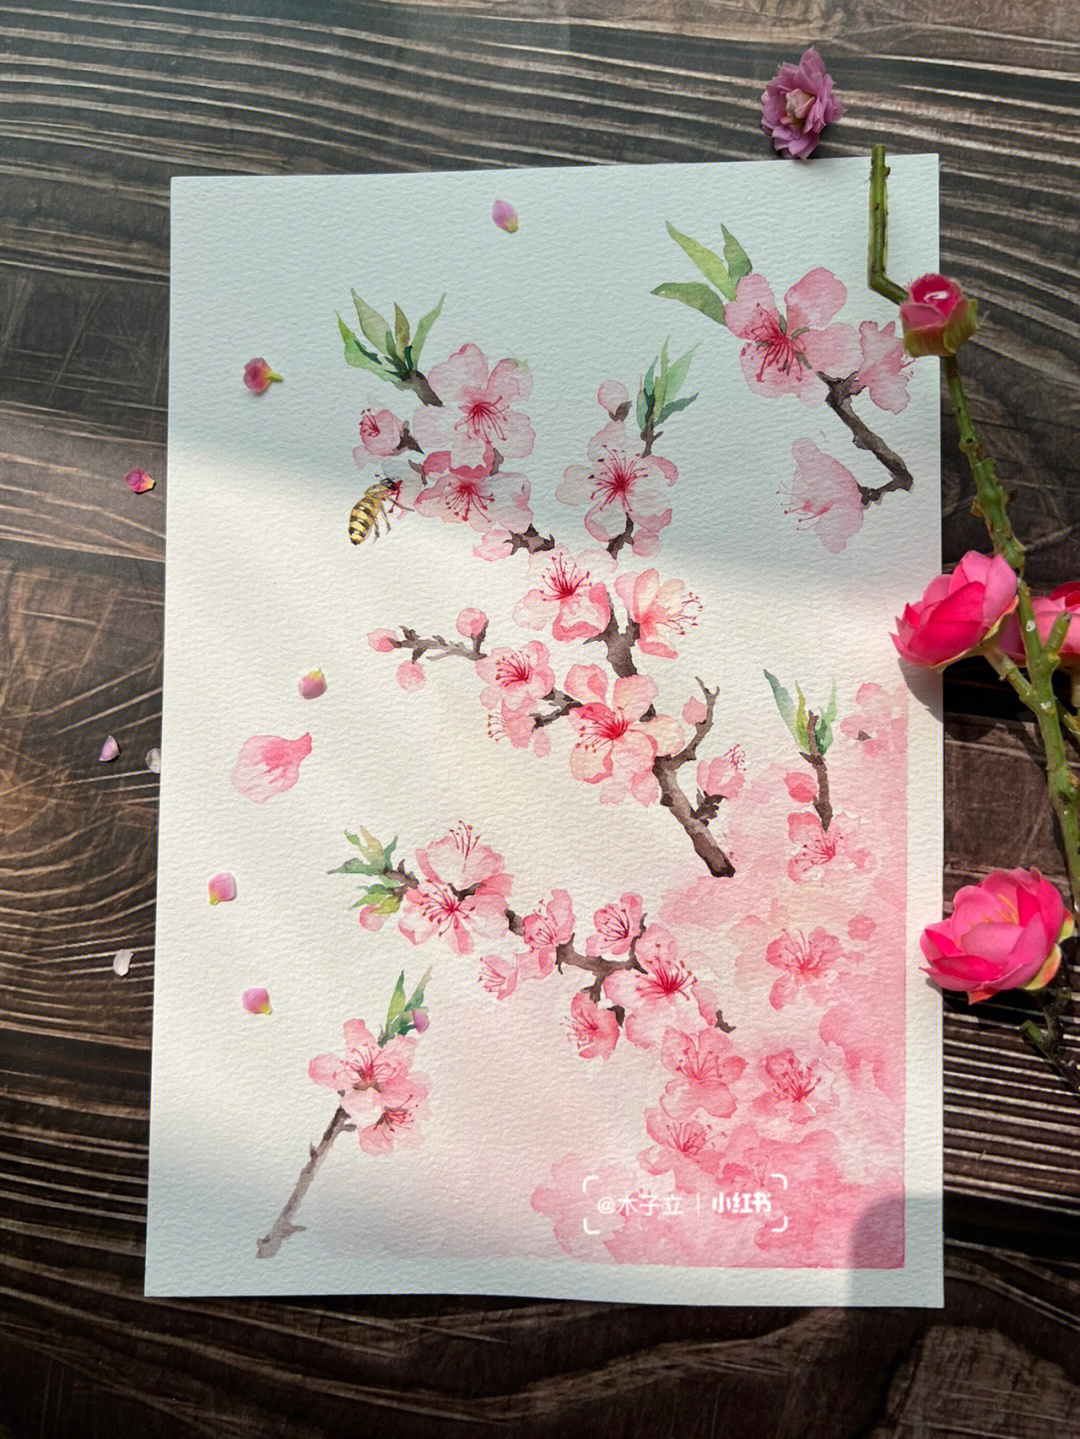 桃花林水彩画图片